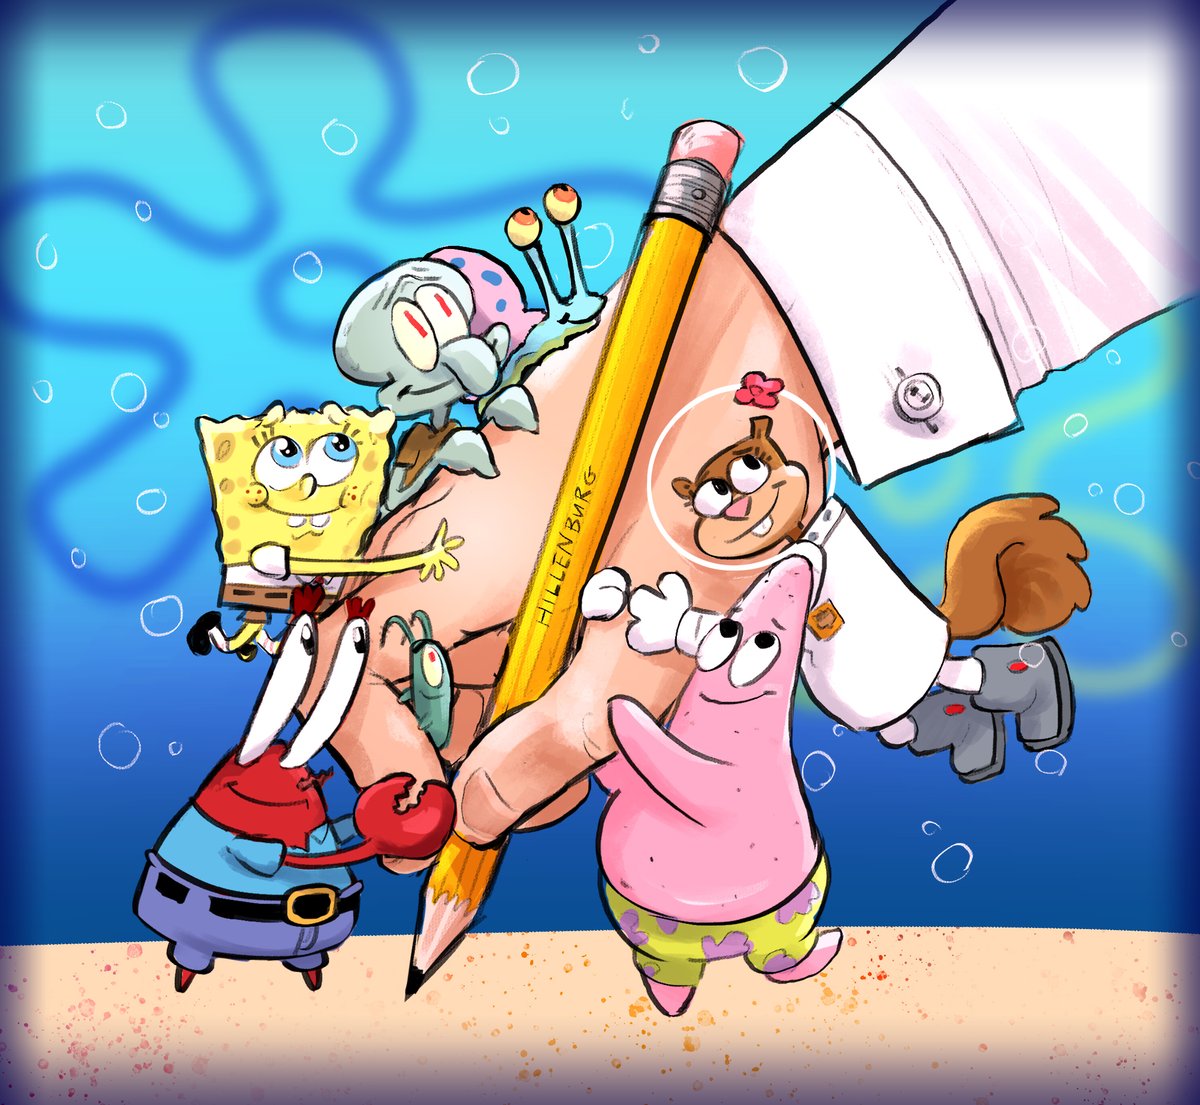 Here's to you snailor #25yearsofspongebob #SpongeBobSquarePants